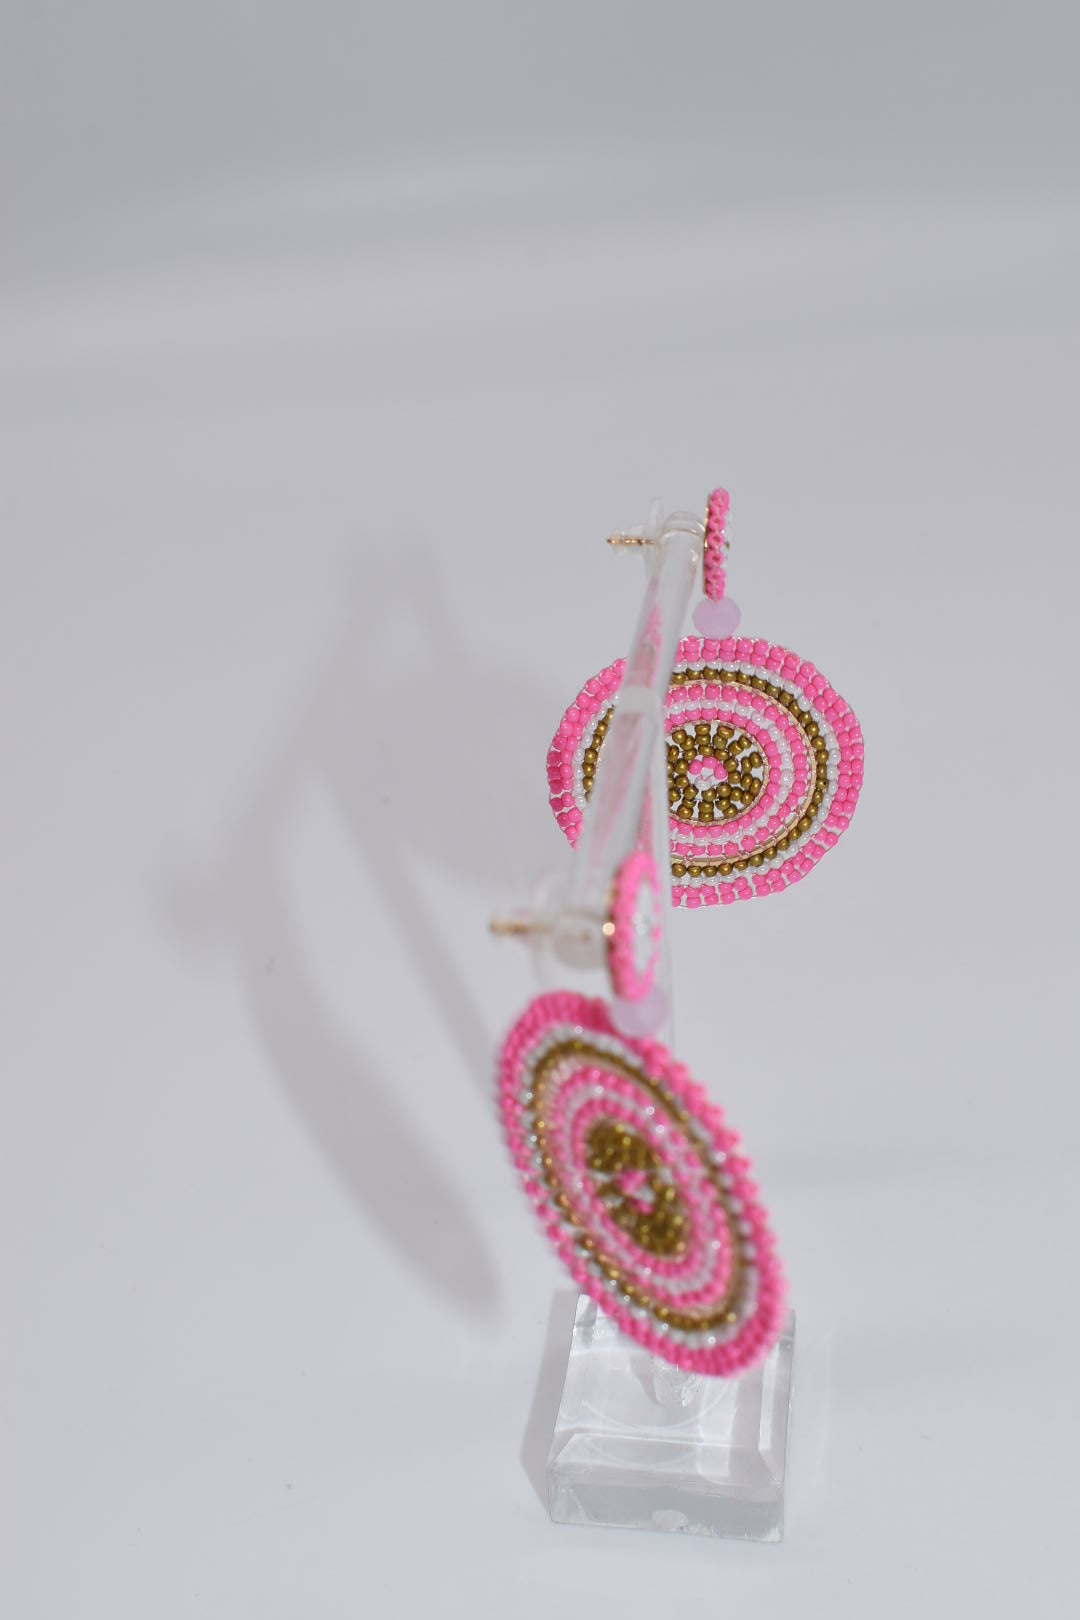 Statement Earrings: Beaded Round Boho Drop Earrings in Pink